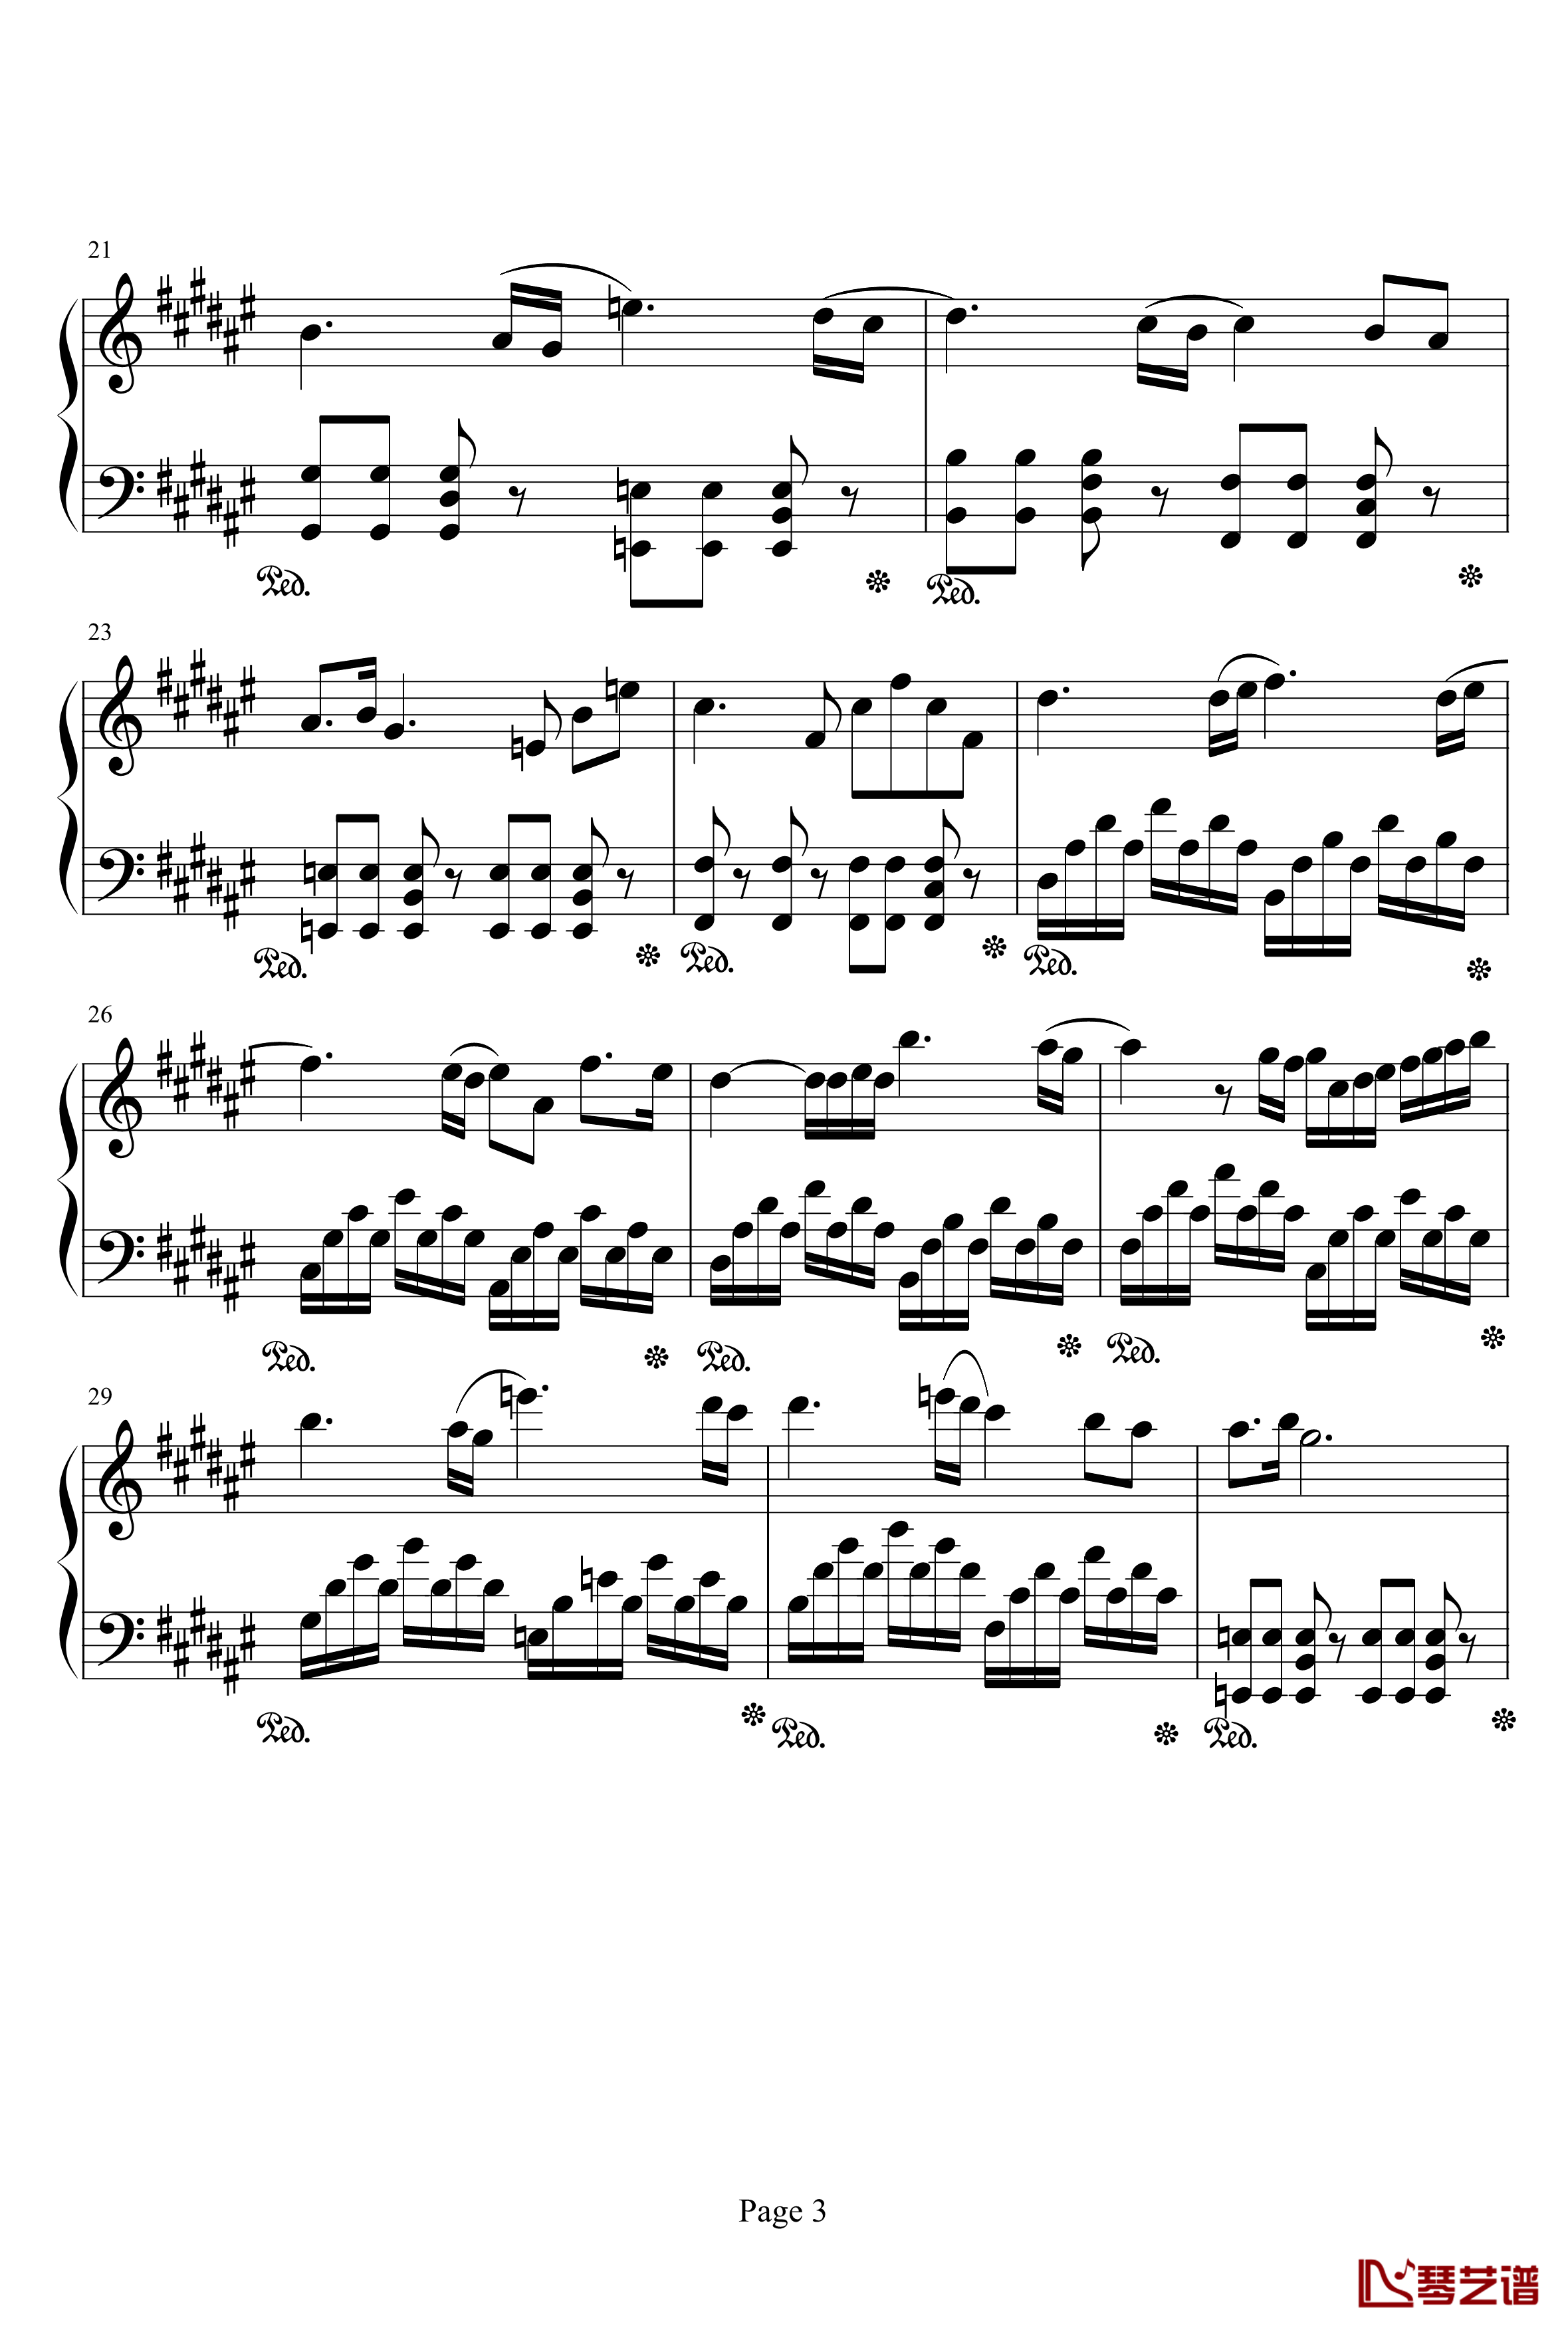 亡灵序曲钢琴谱-完整版-亡灵序曲3